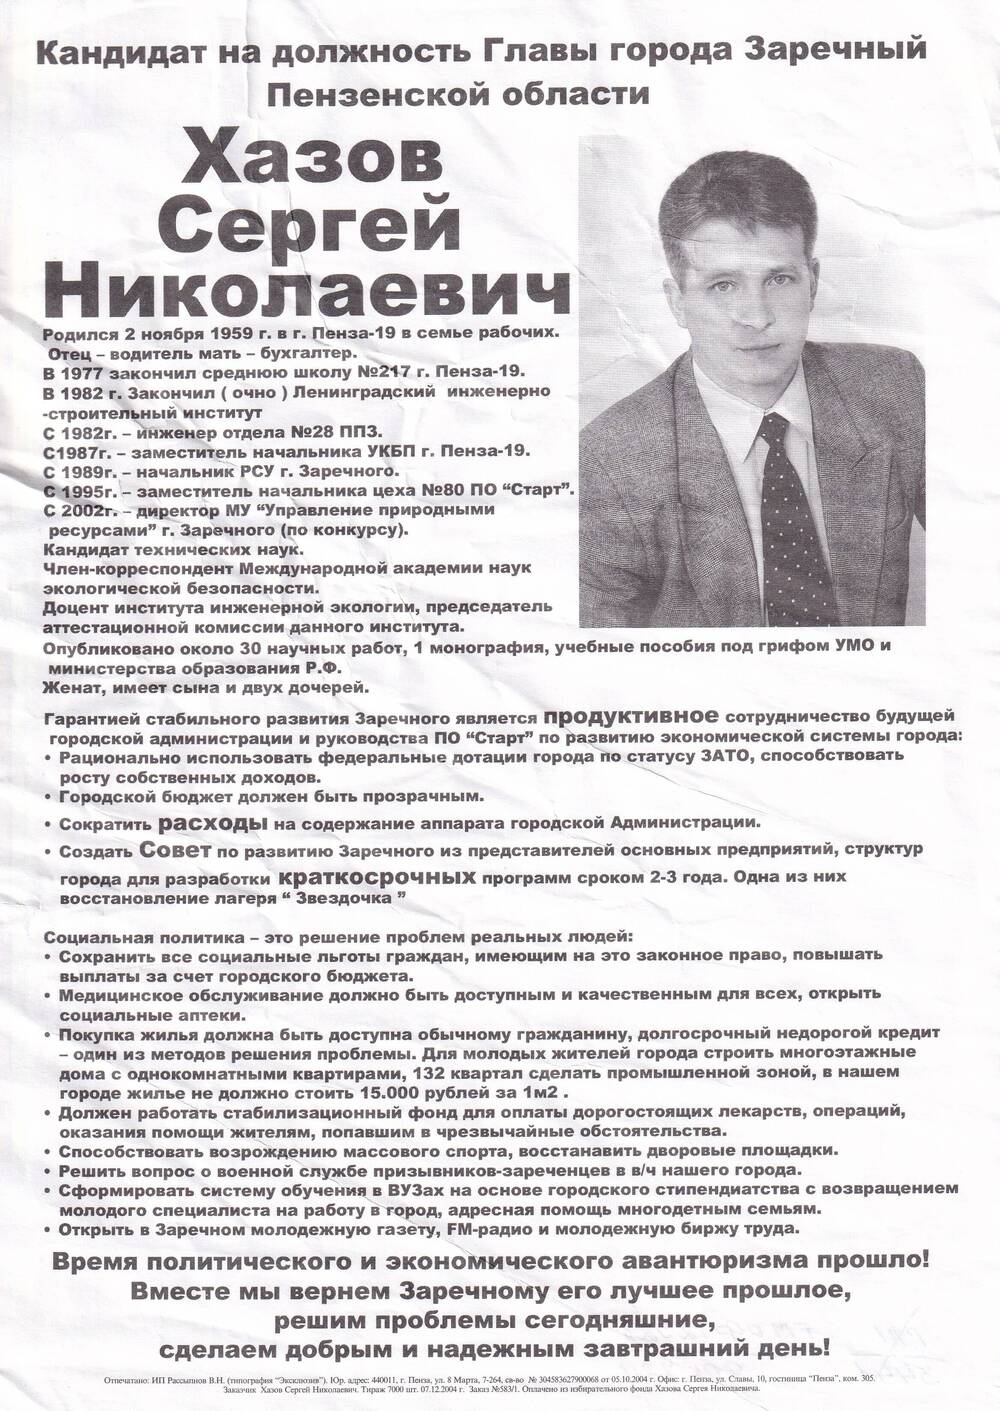 Агитационная листовка кандидата на должность Главы города Заречного Хазова Сергея Николаевича